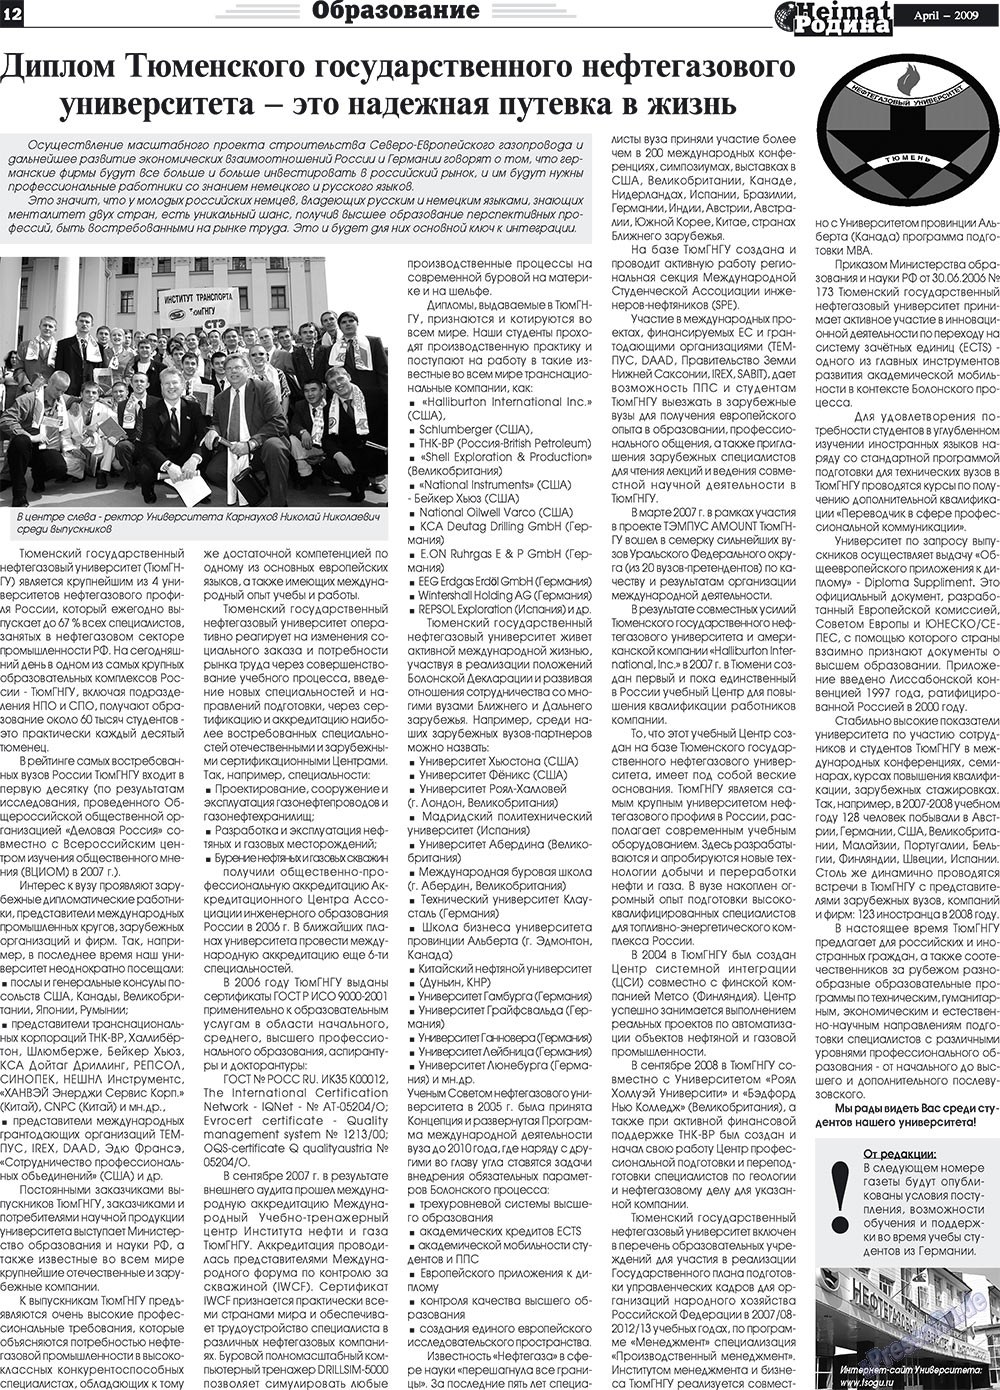 Heimat-Родина (газета). 2009 год, номер 4, стр. 12